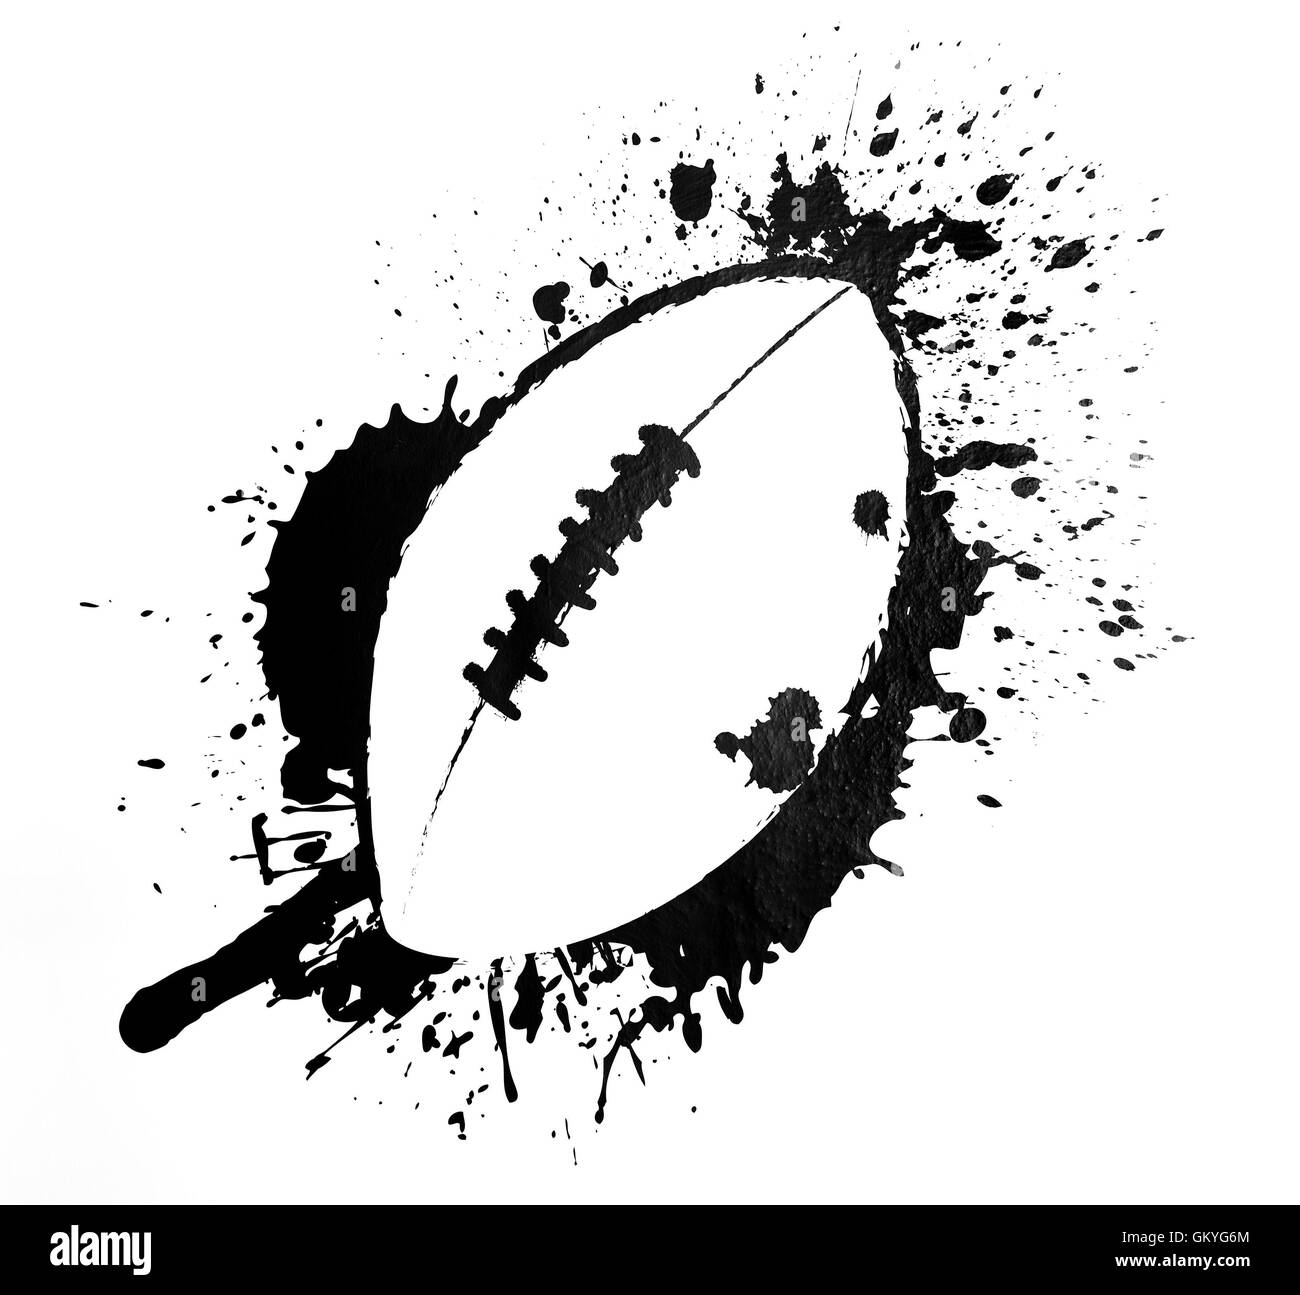 Schwarz / weiß modernen Fußball Schild mit einem Doodle Ball auf einen gemalten Spritzer skizzieren oder splatter-Effekt Hintergrund Stockfoto